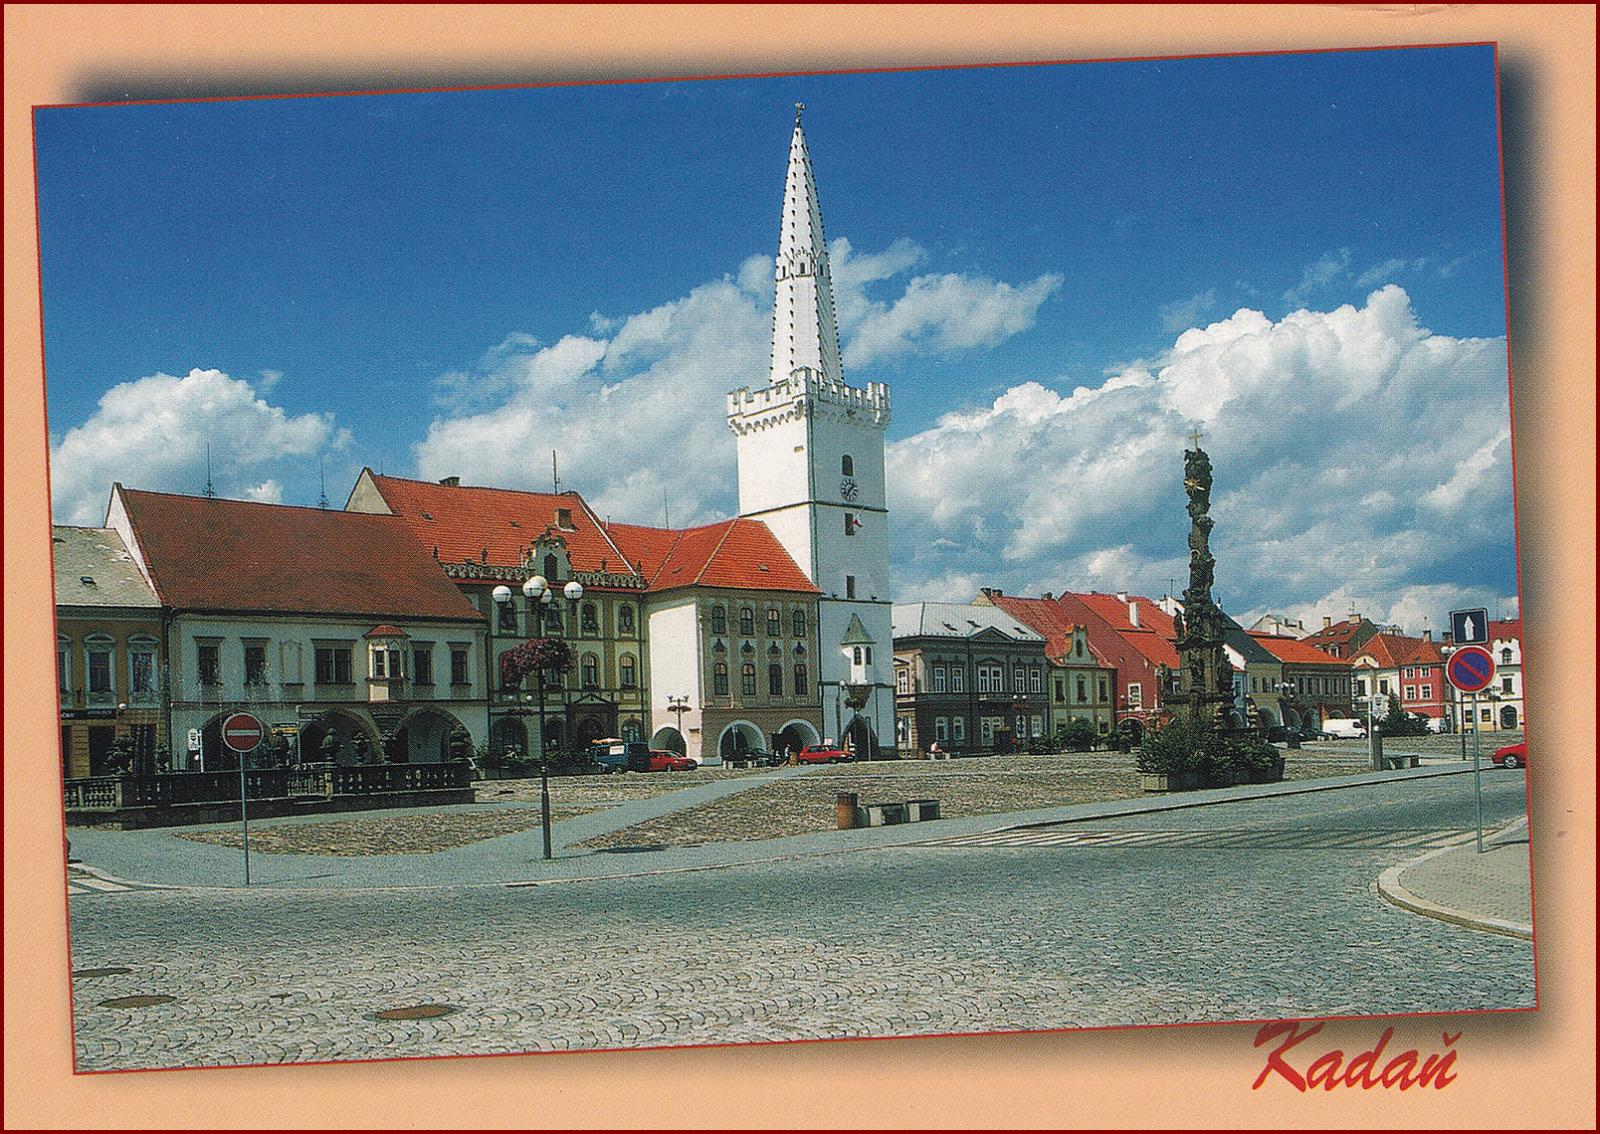 Kadaň * budova radnice, náměstí, část města * Chomutov * B009 - Pohlednice místopis